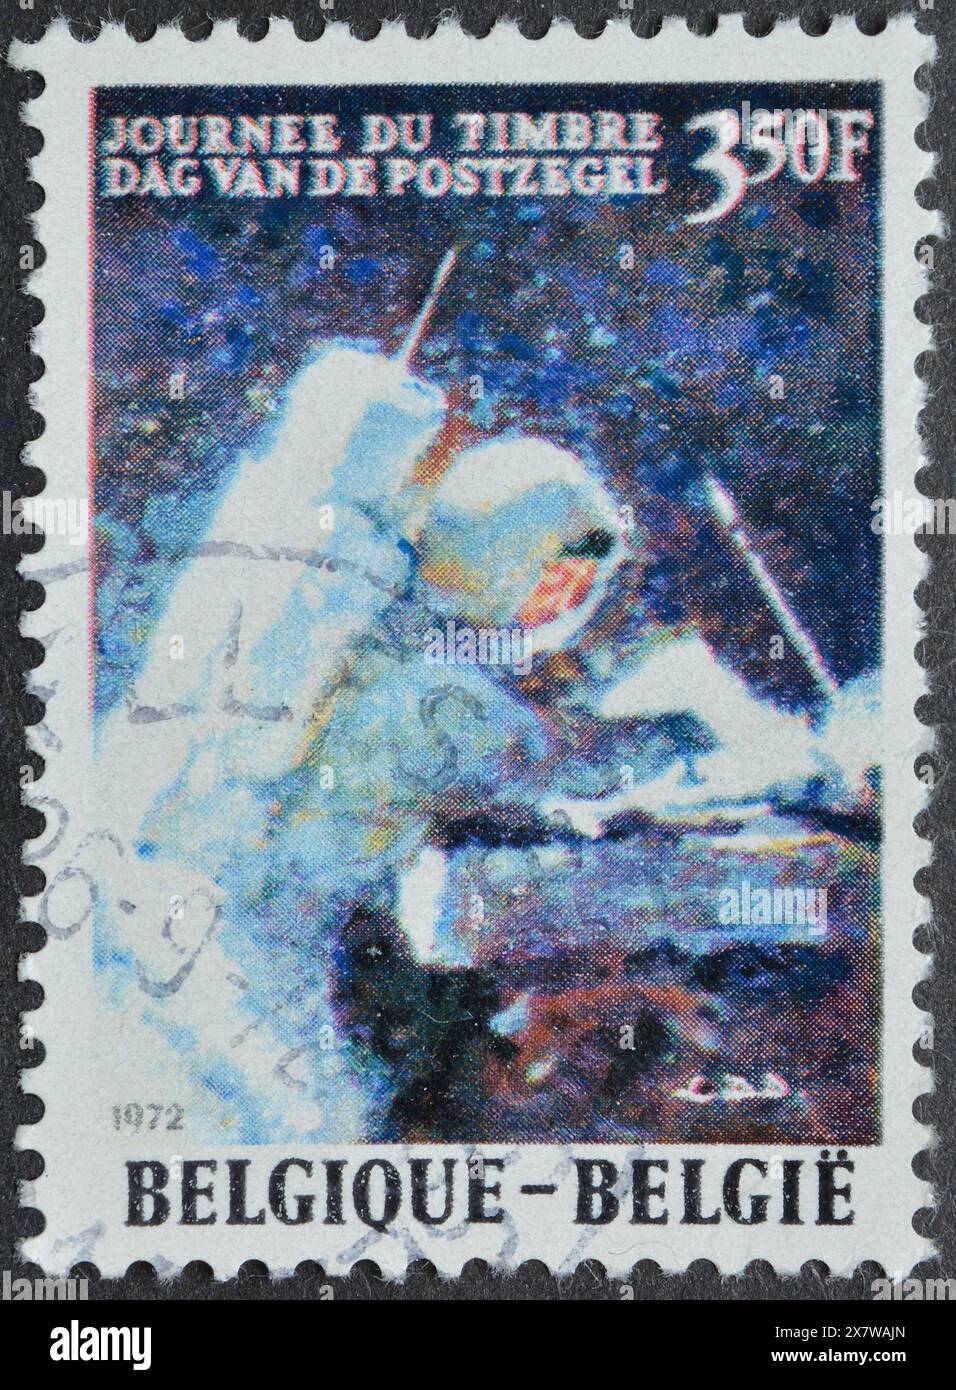 Timbre-poste oblitéré imprimé par la Belgique, qui montre David Randolph Scott sur la Lune, vers 1972. Banque D'Images